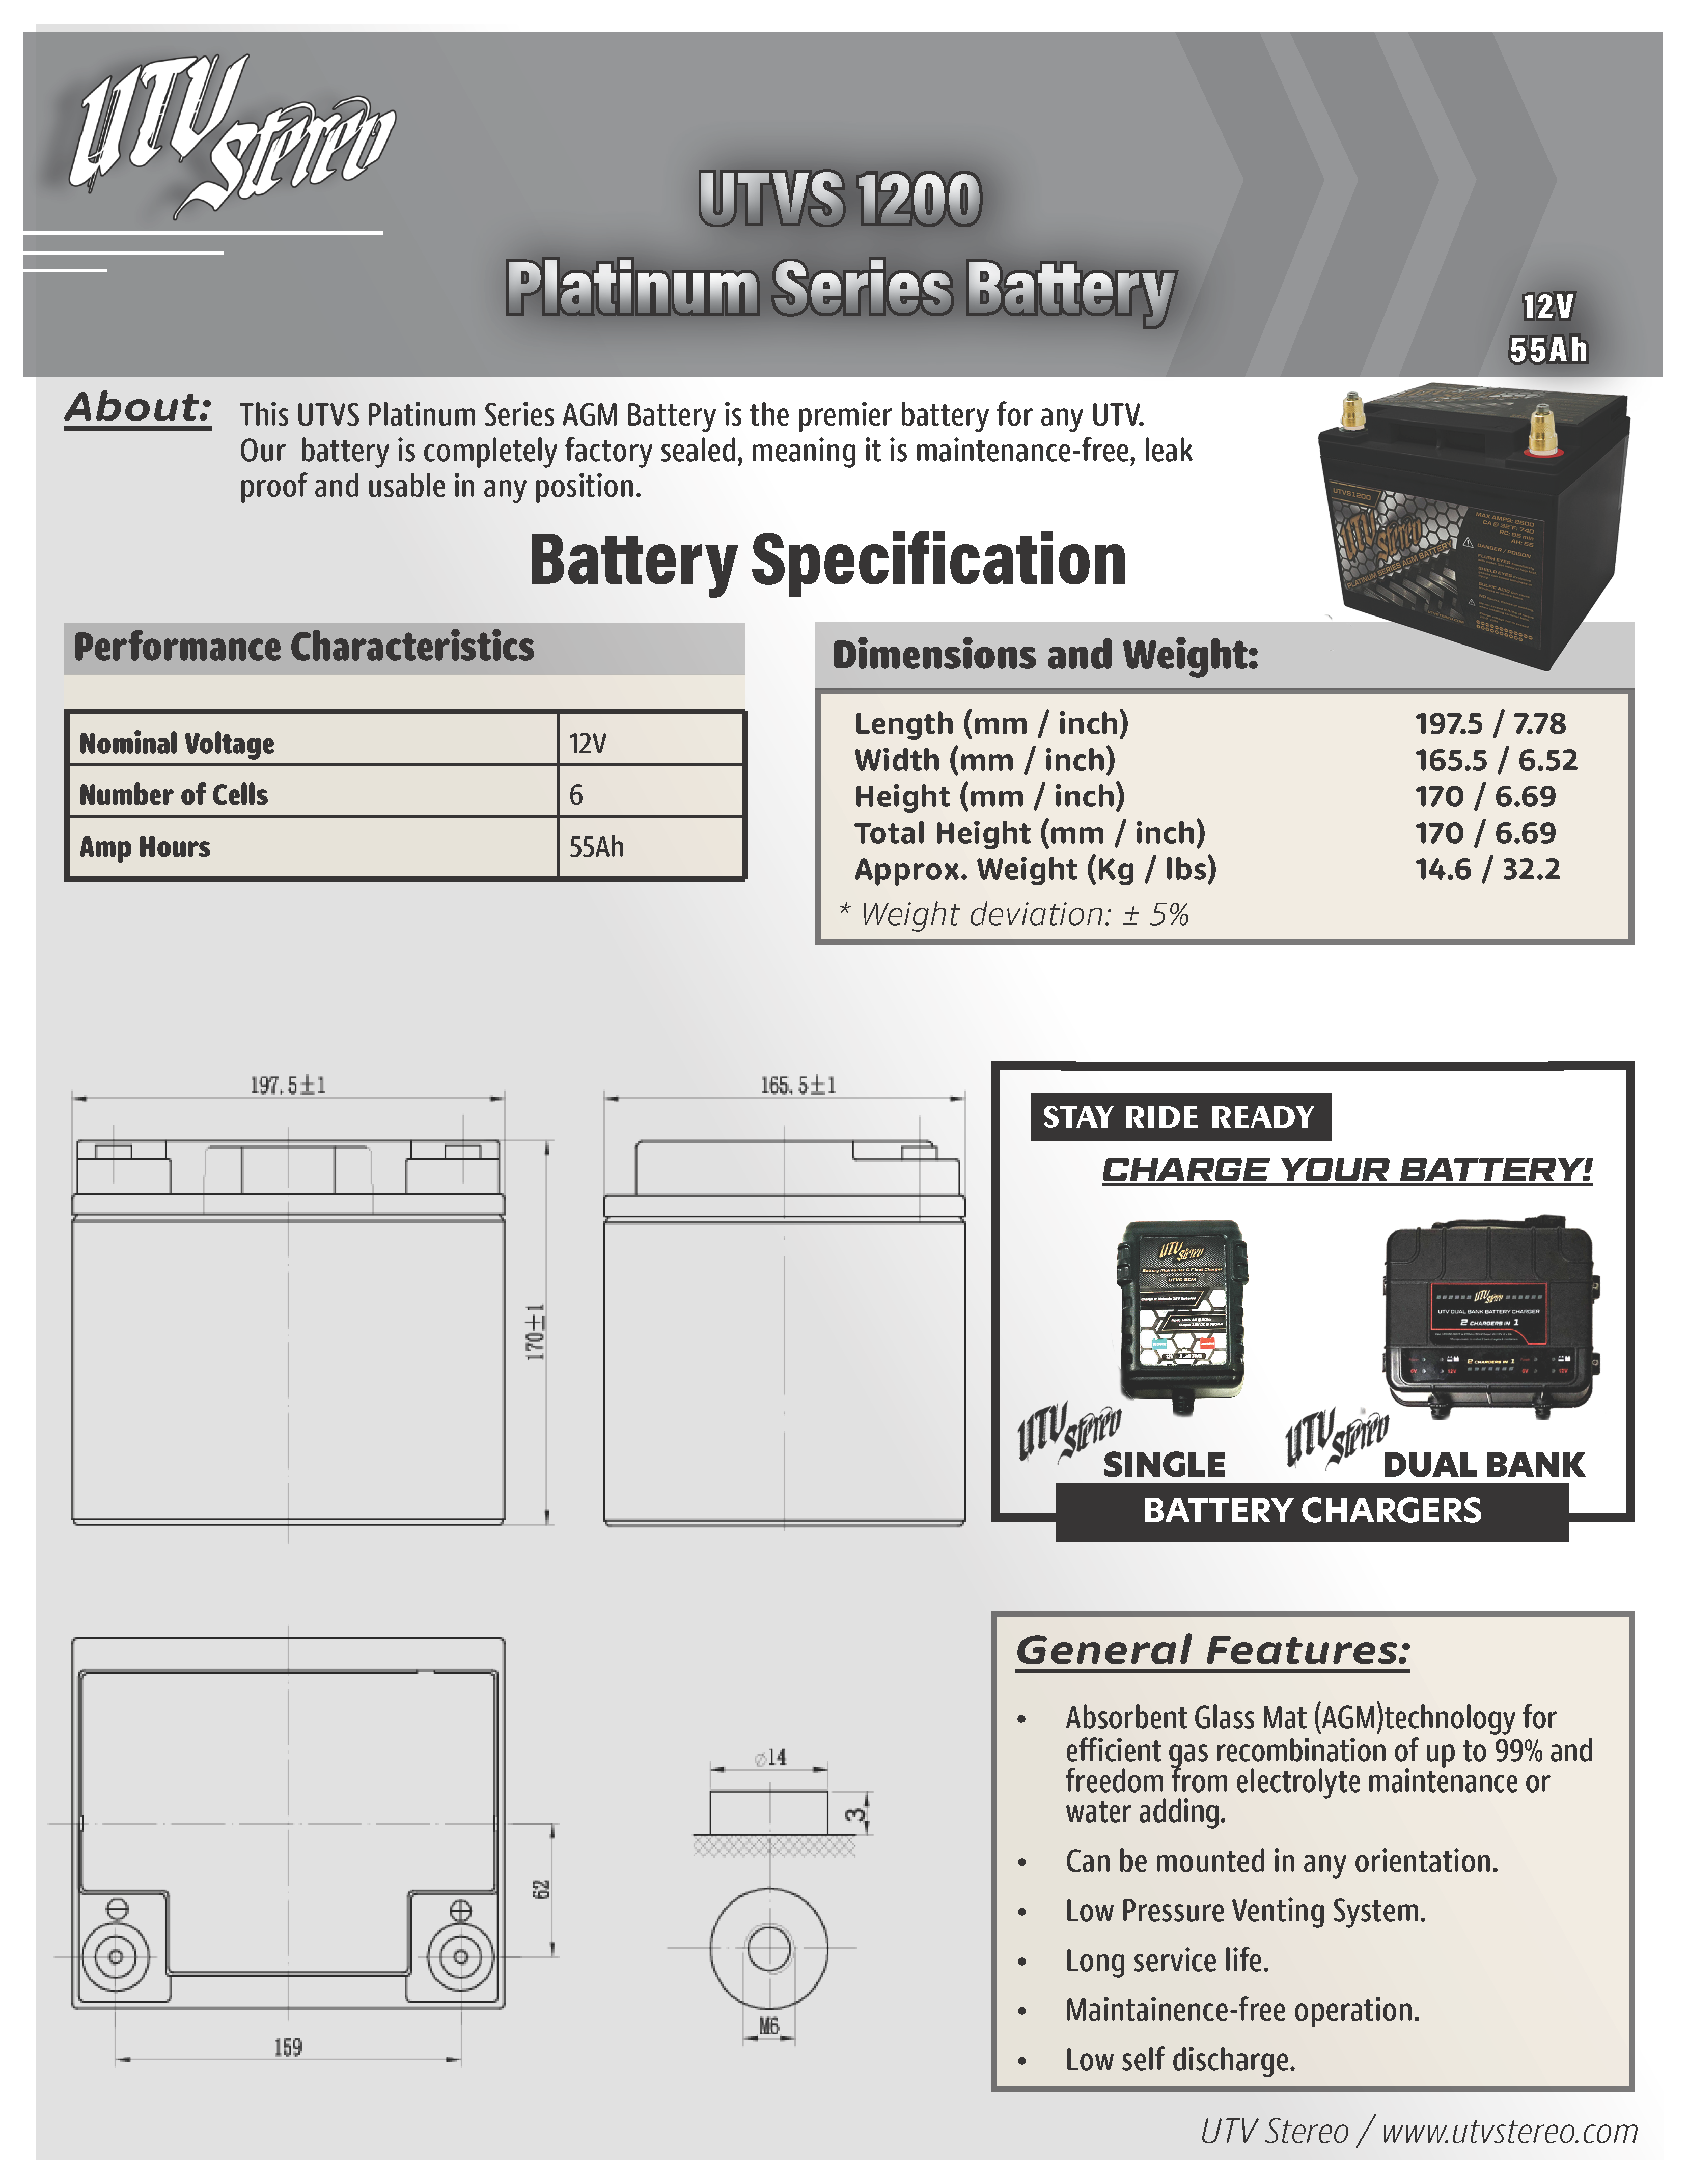 UTV Stereo Platinum Series AGM 1200 Battery